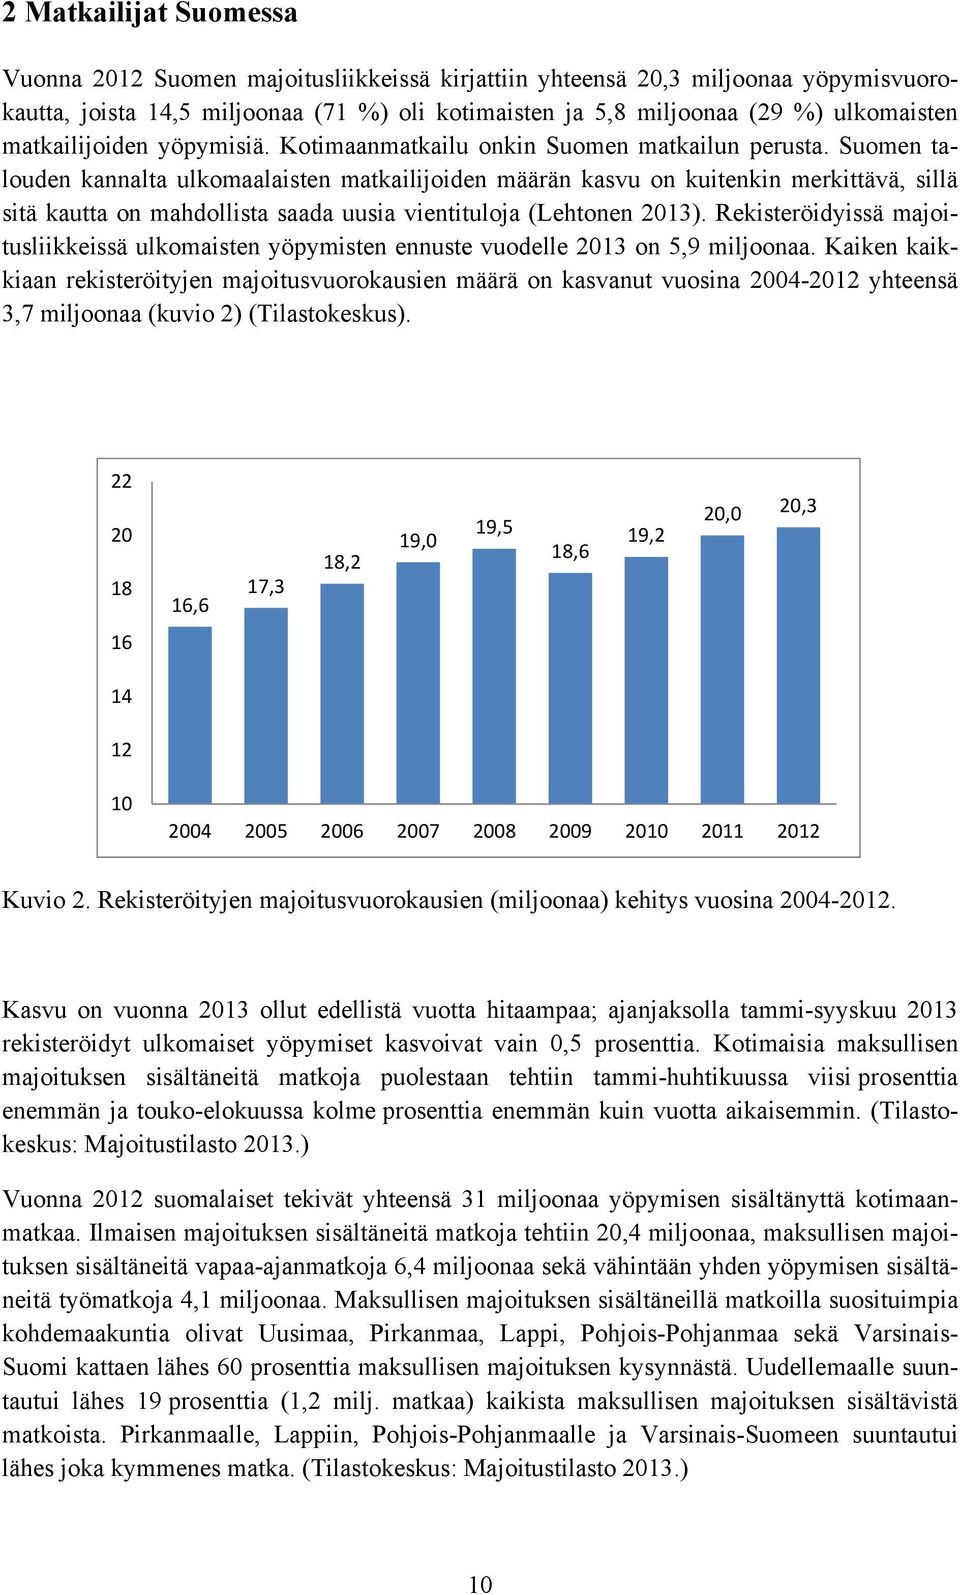 Suomen talouden kannalta ulkomaalaisten matkailijoiden määrän kasvu on kuitenkin merkittävä, sillä sitä kautta on mahdollista saada uusia vientituloja (Lehtonen 2013).